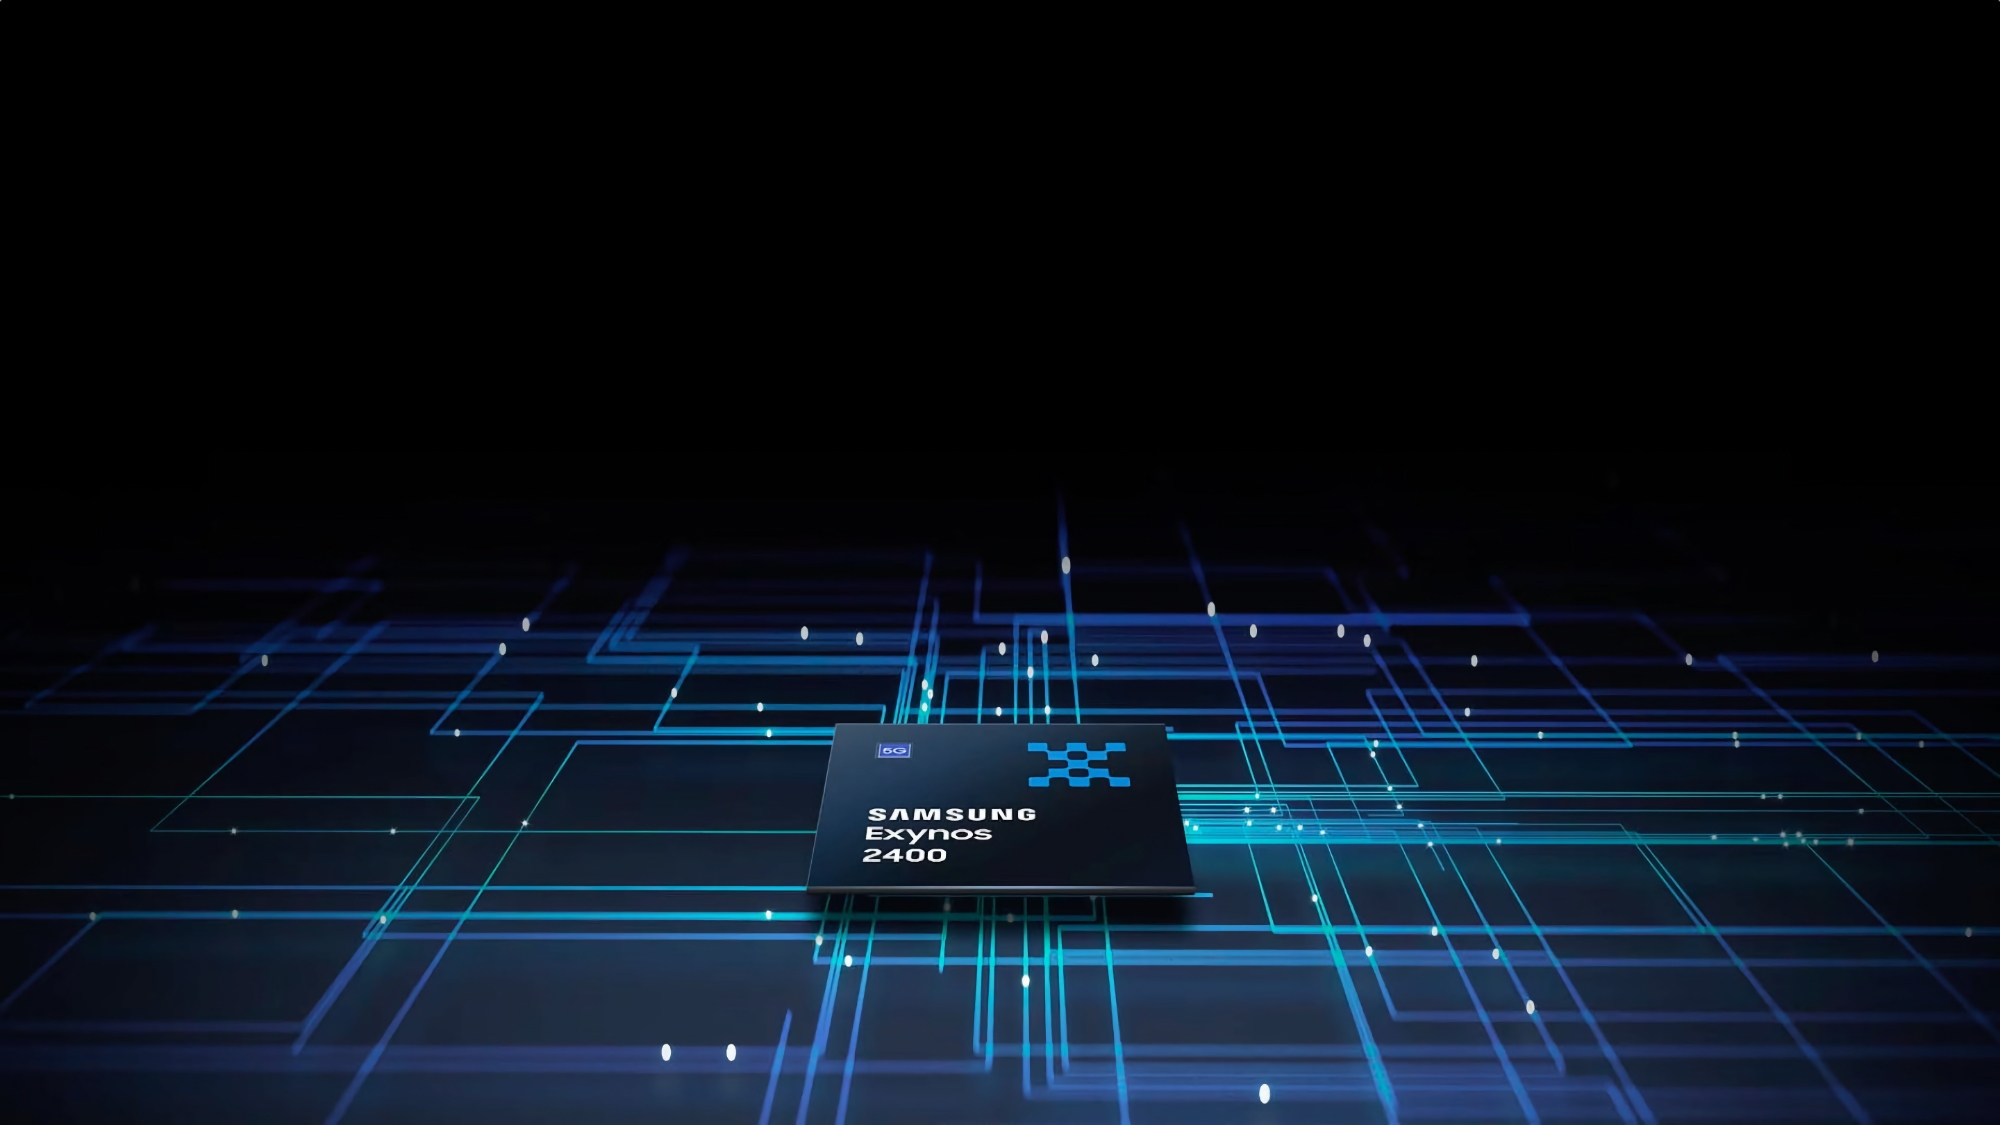 10 core di CPU e grafica Xclipse 940: Samsung ha rivelato i dettagli del suo chip di punta Exynos 2400